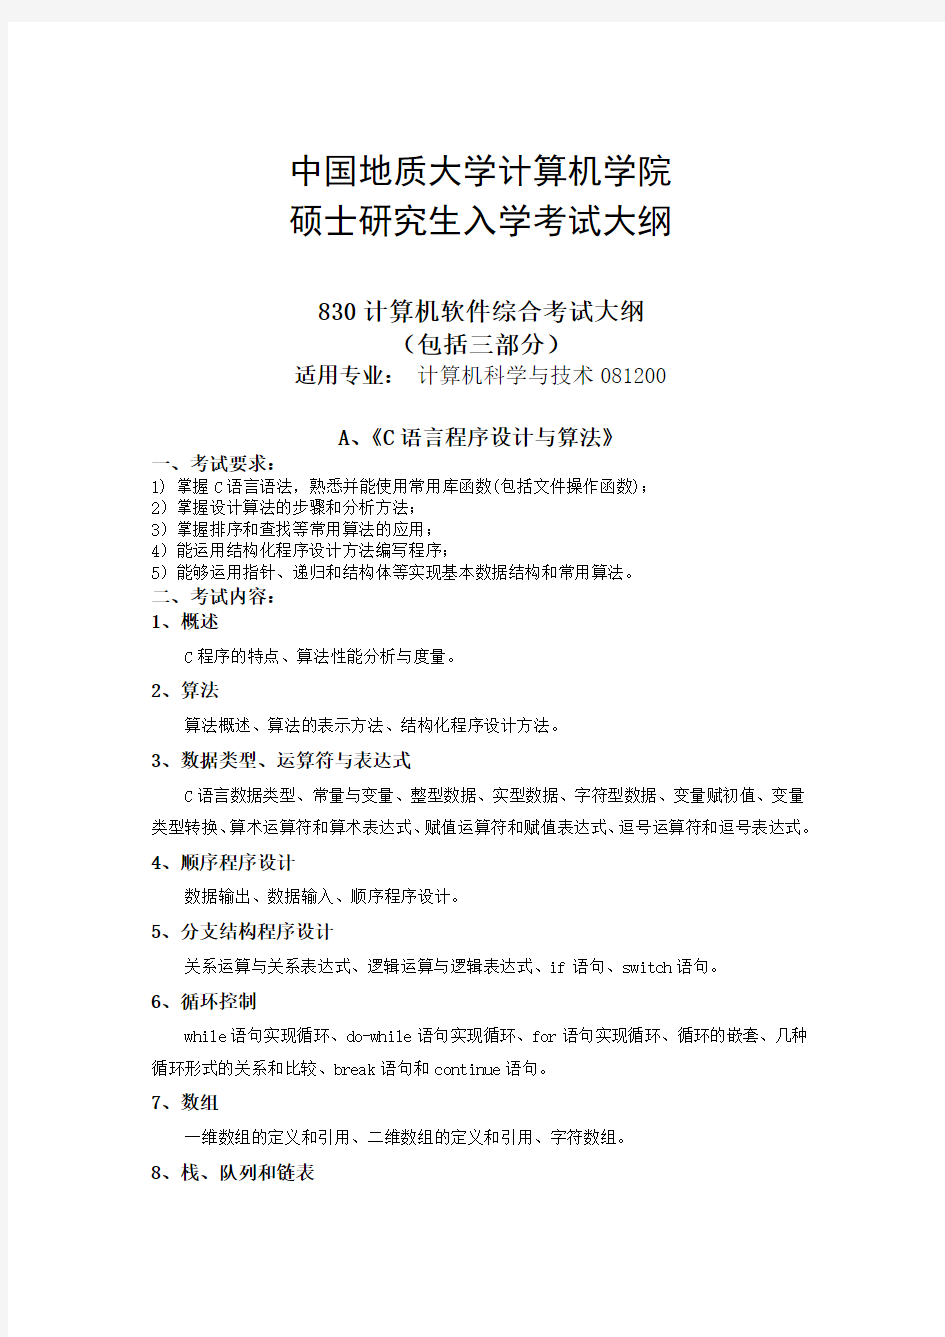 中国地质大学计算机学院2015研究生入学考试大纲